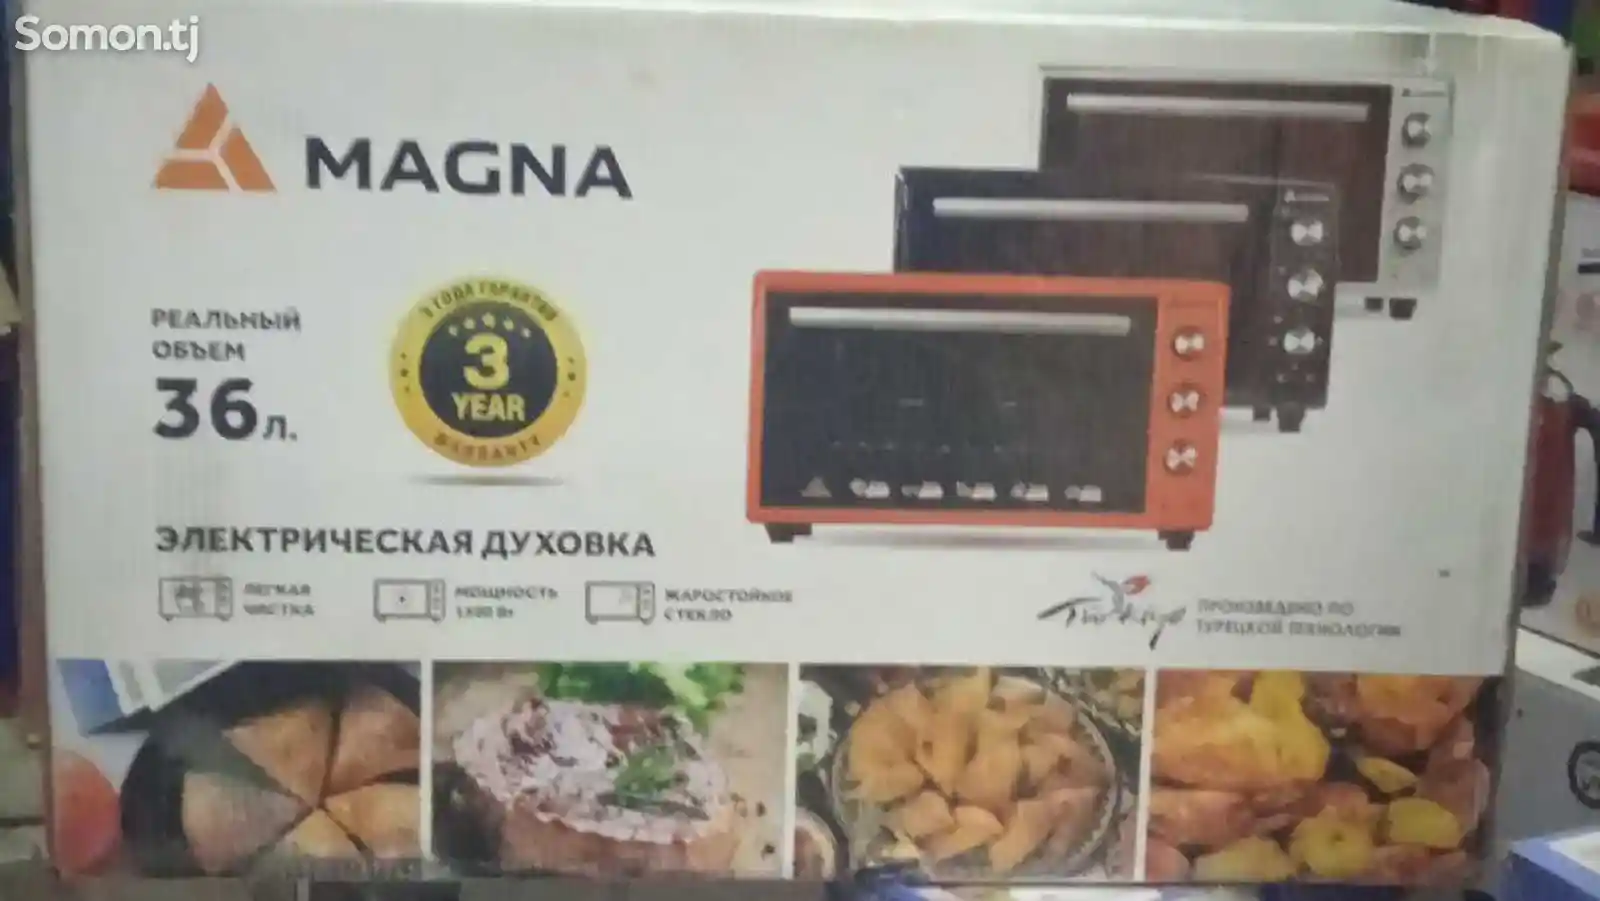 Духовка Magna-1